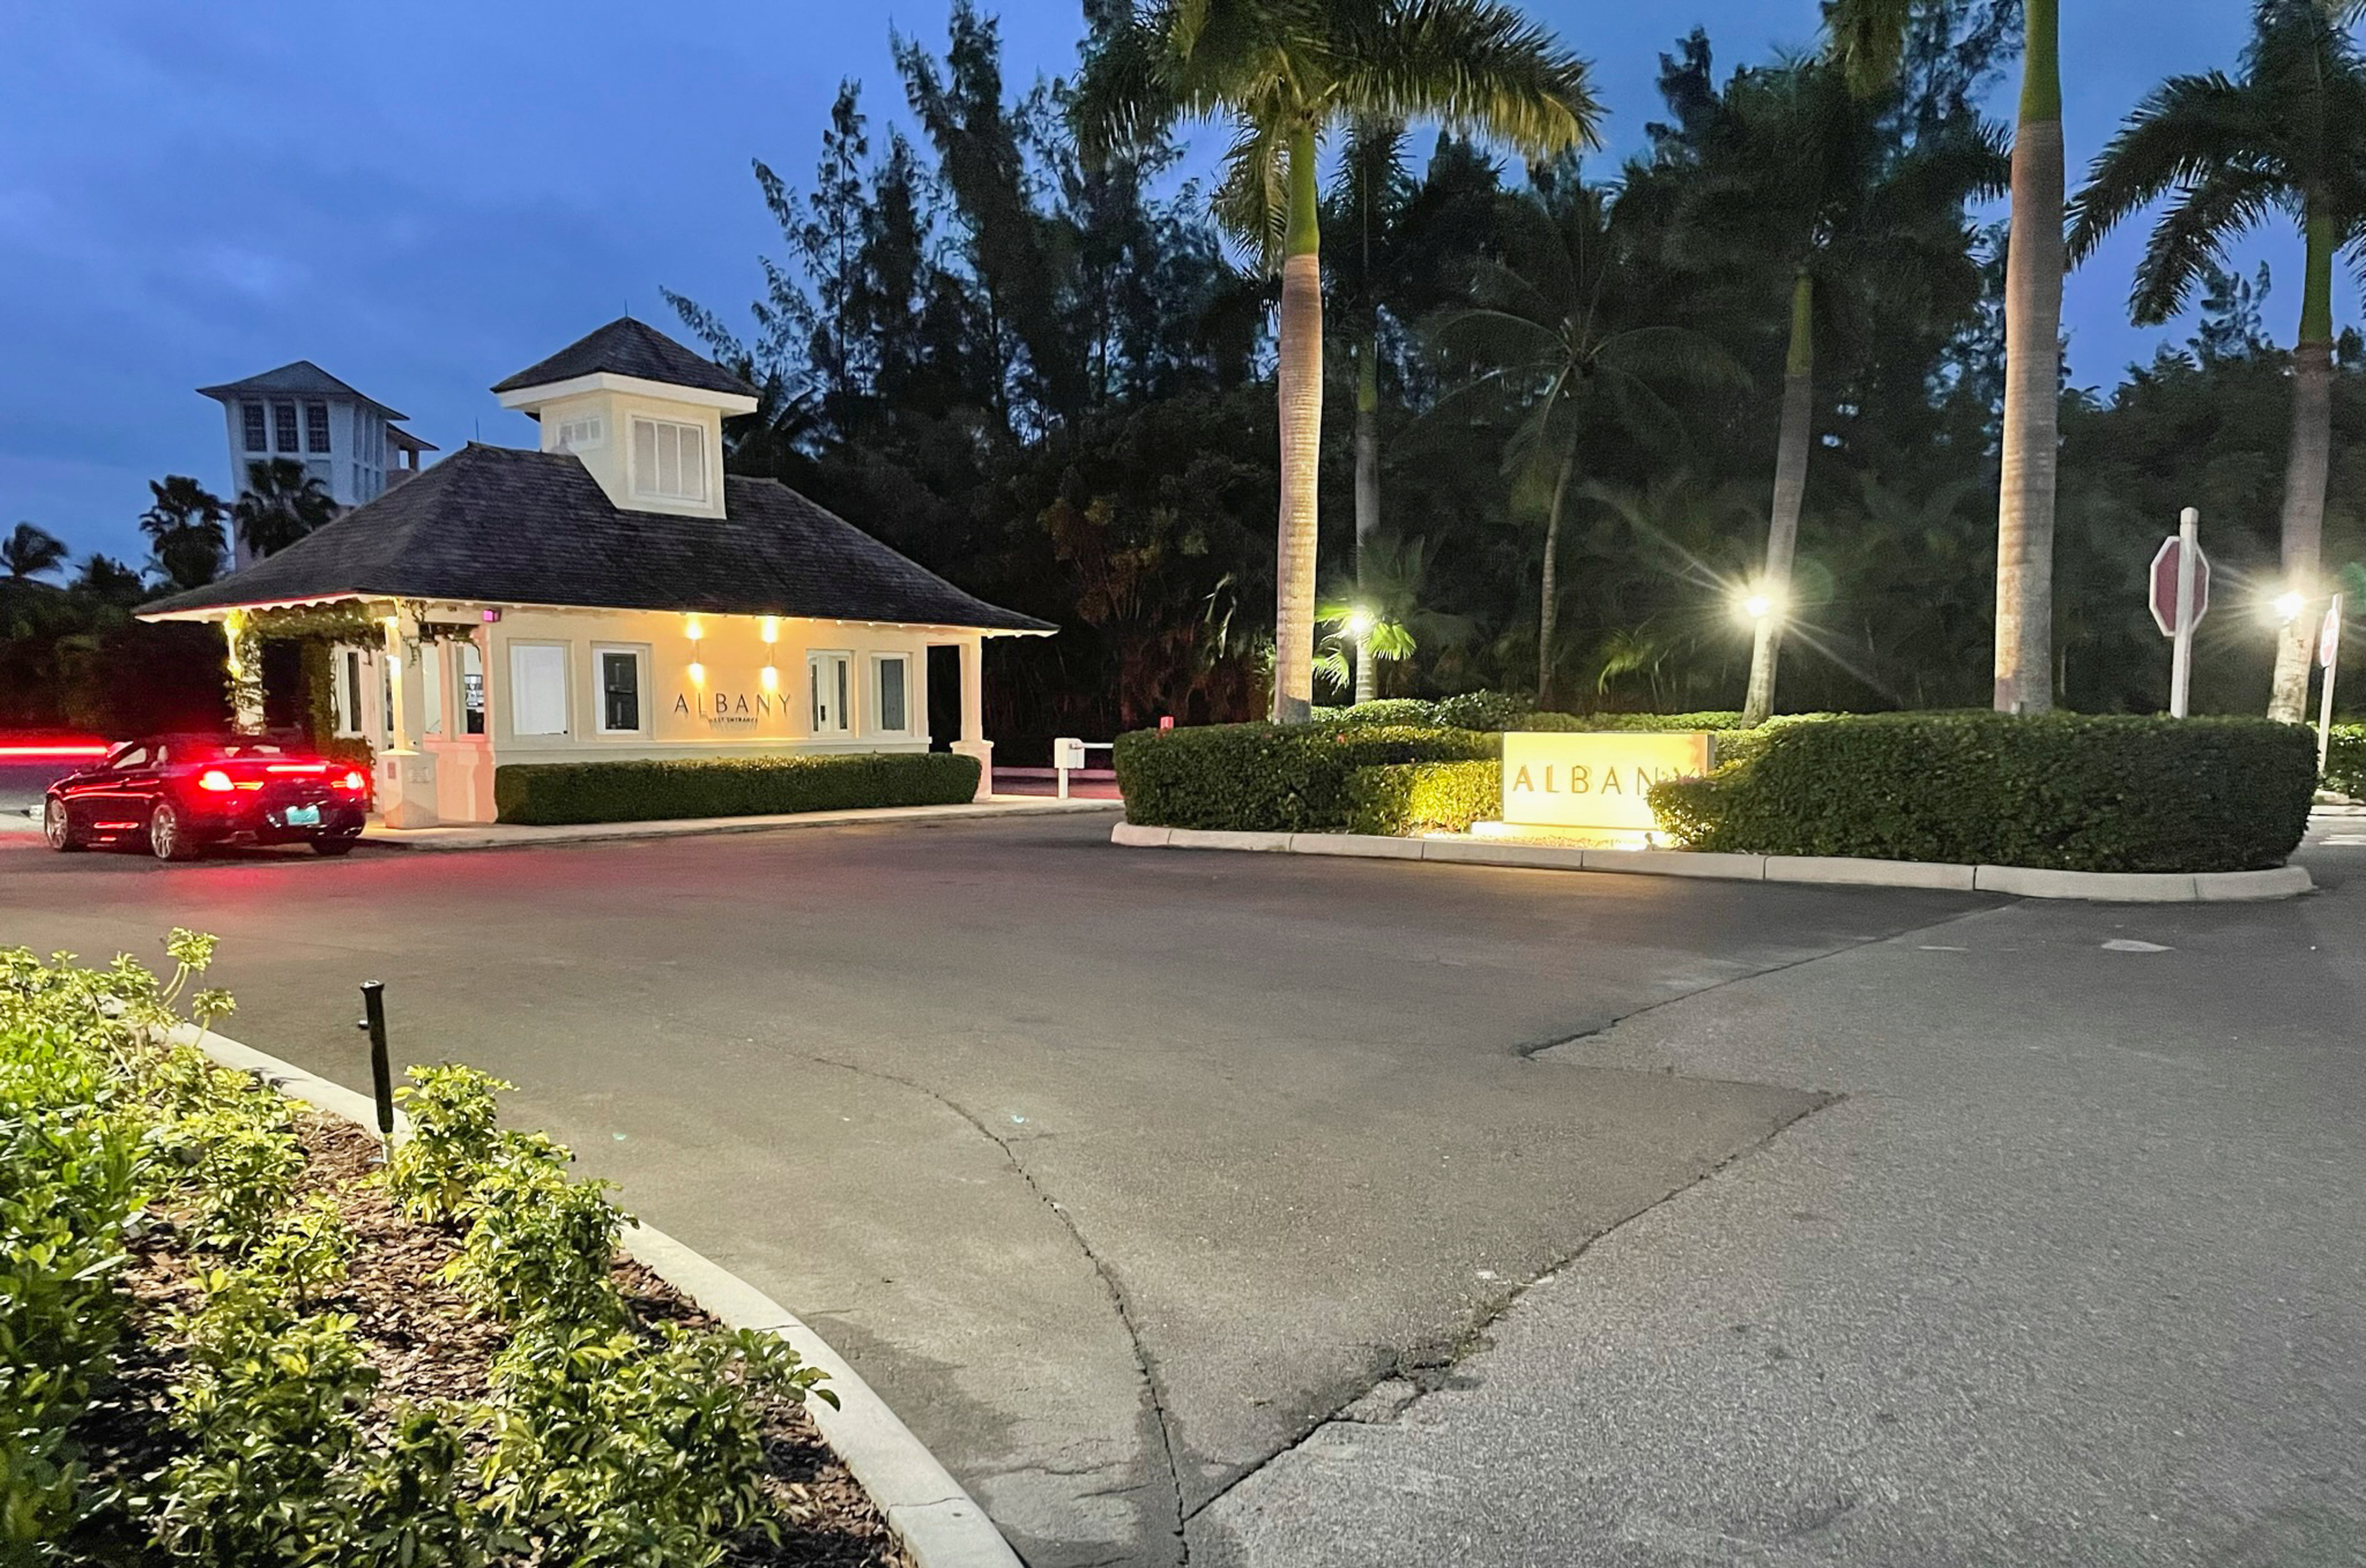 La entrada a "Albany", la comunidad cerrada en New Providence, Bahamas, situada frente al mar Caribe, donde vivían Bankman Fried y sus acólitos 
REUTERS/Koh Gui Qing